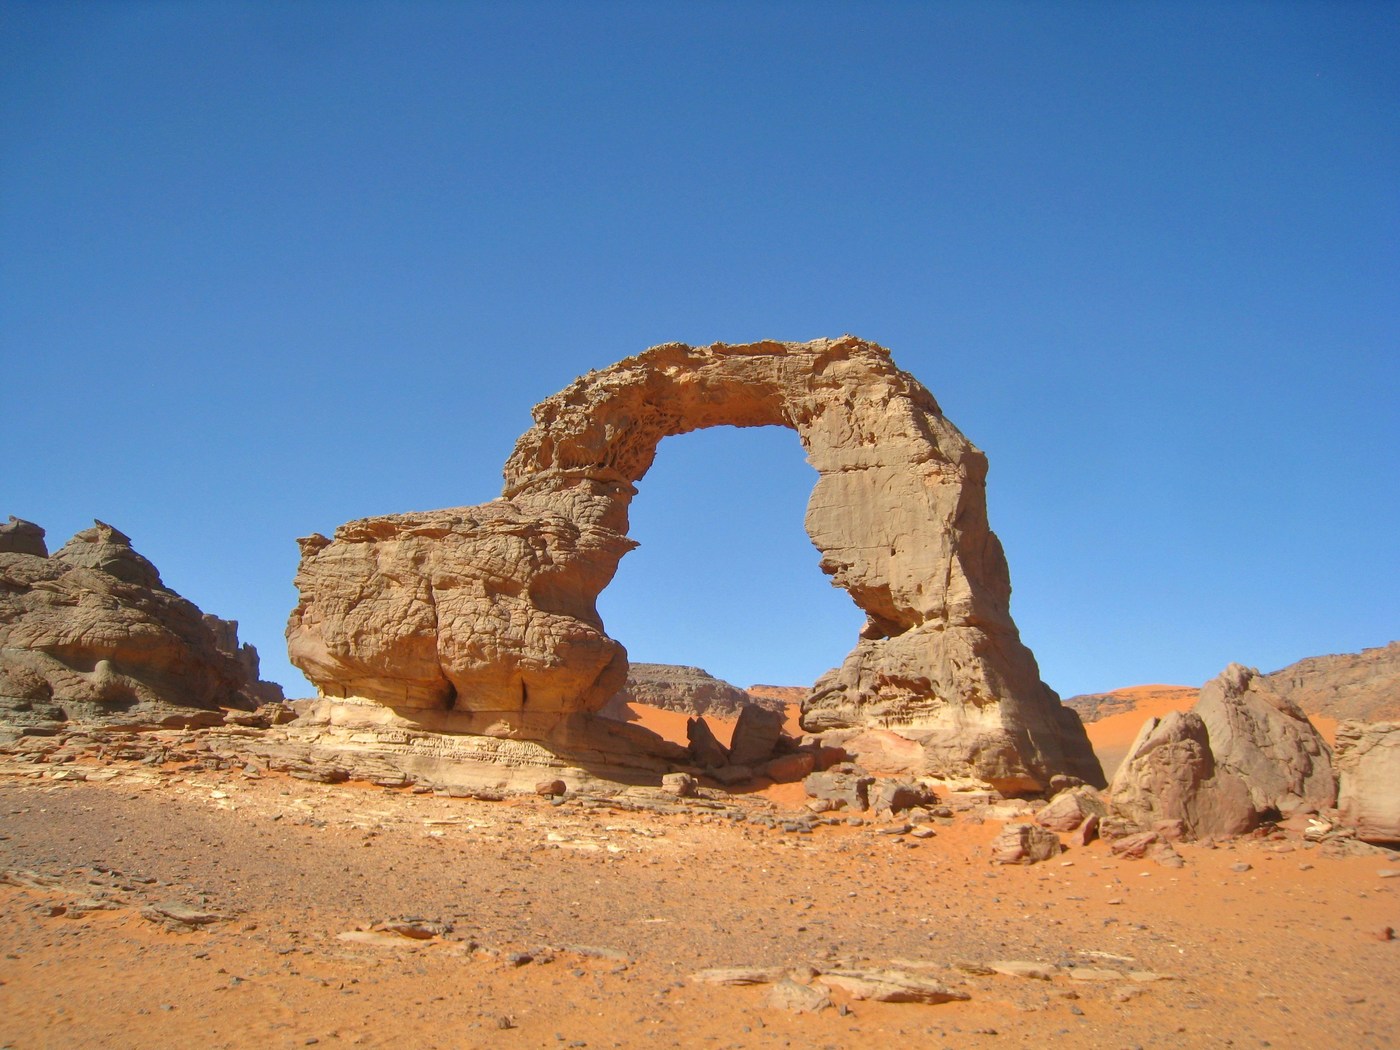 Slika snimljena u Saharayu, na planinskoj visoravni Thadrat, na jugoistoku Alžira